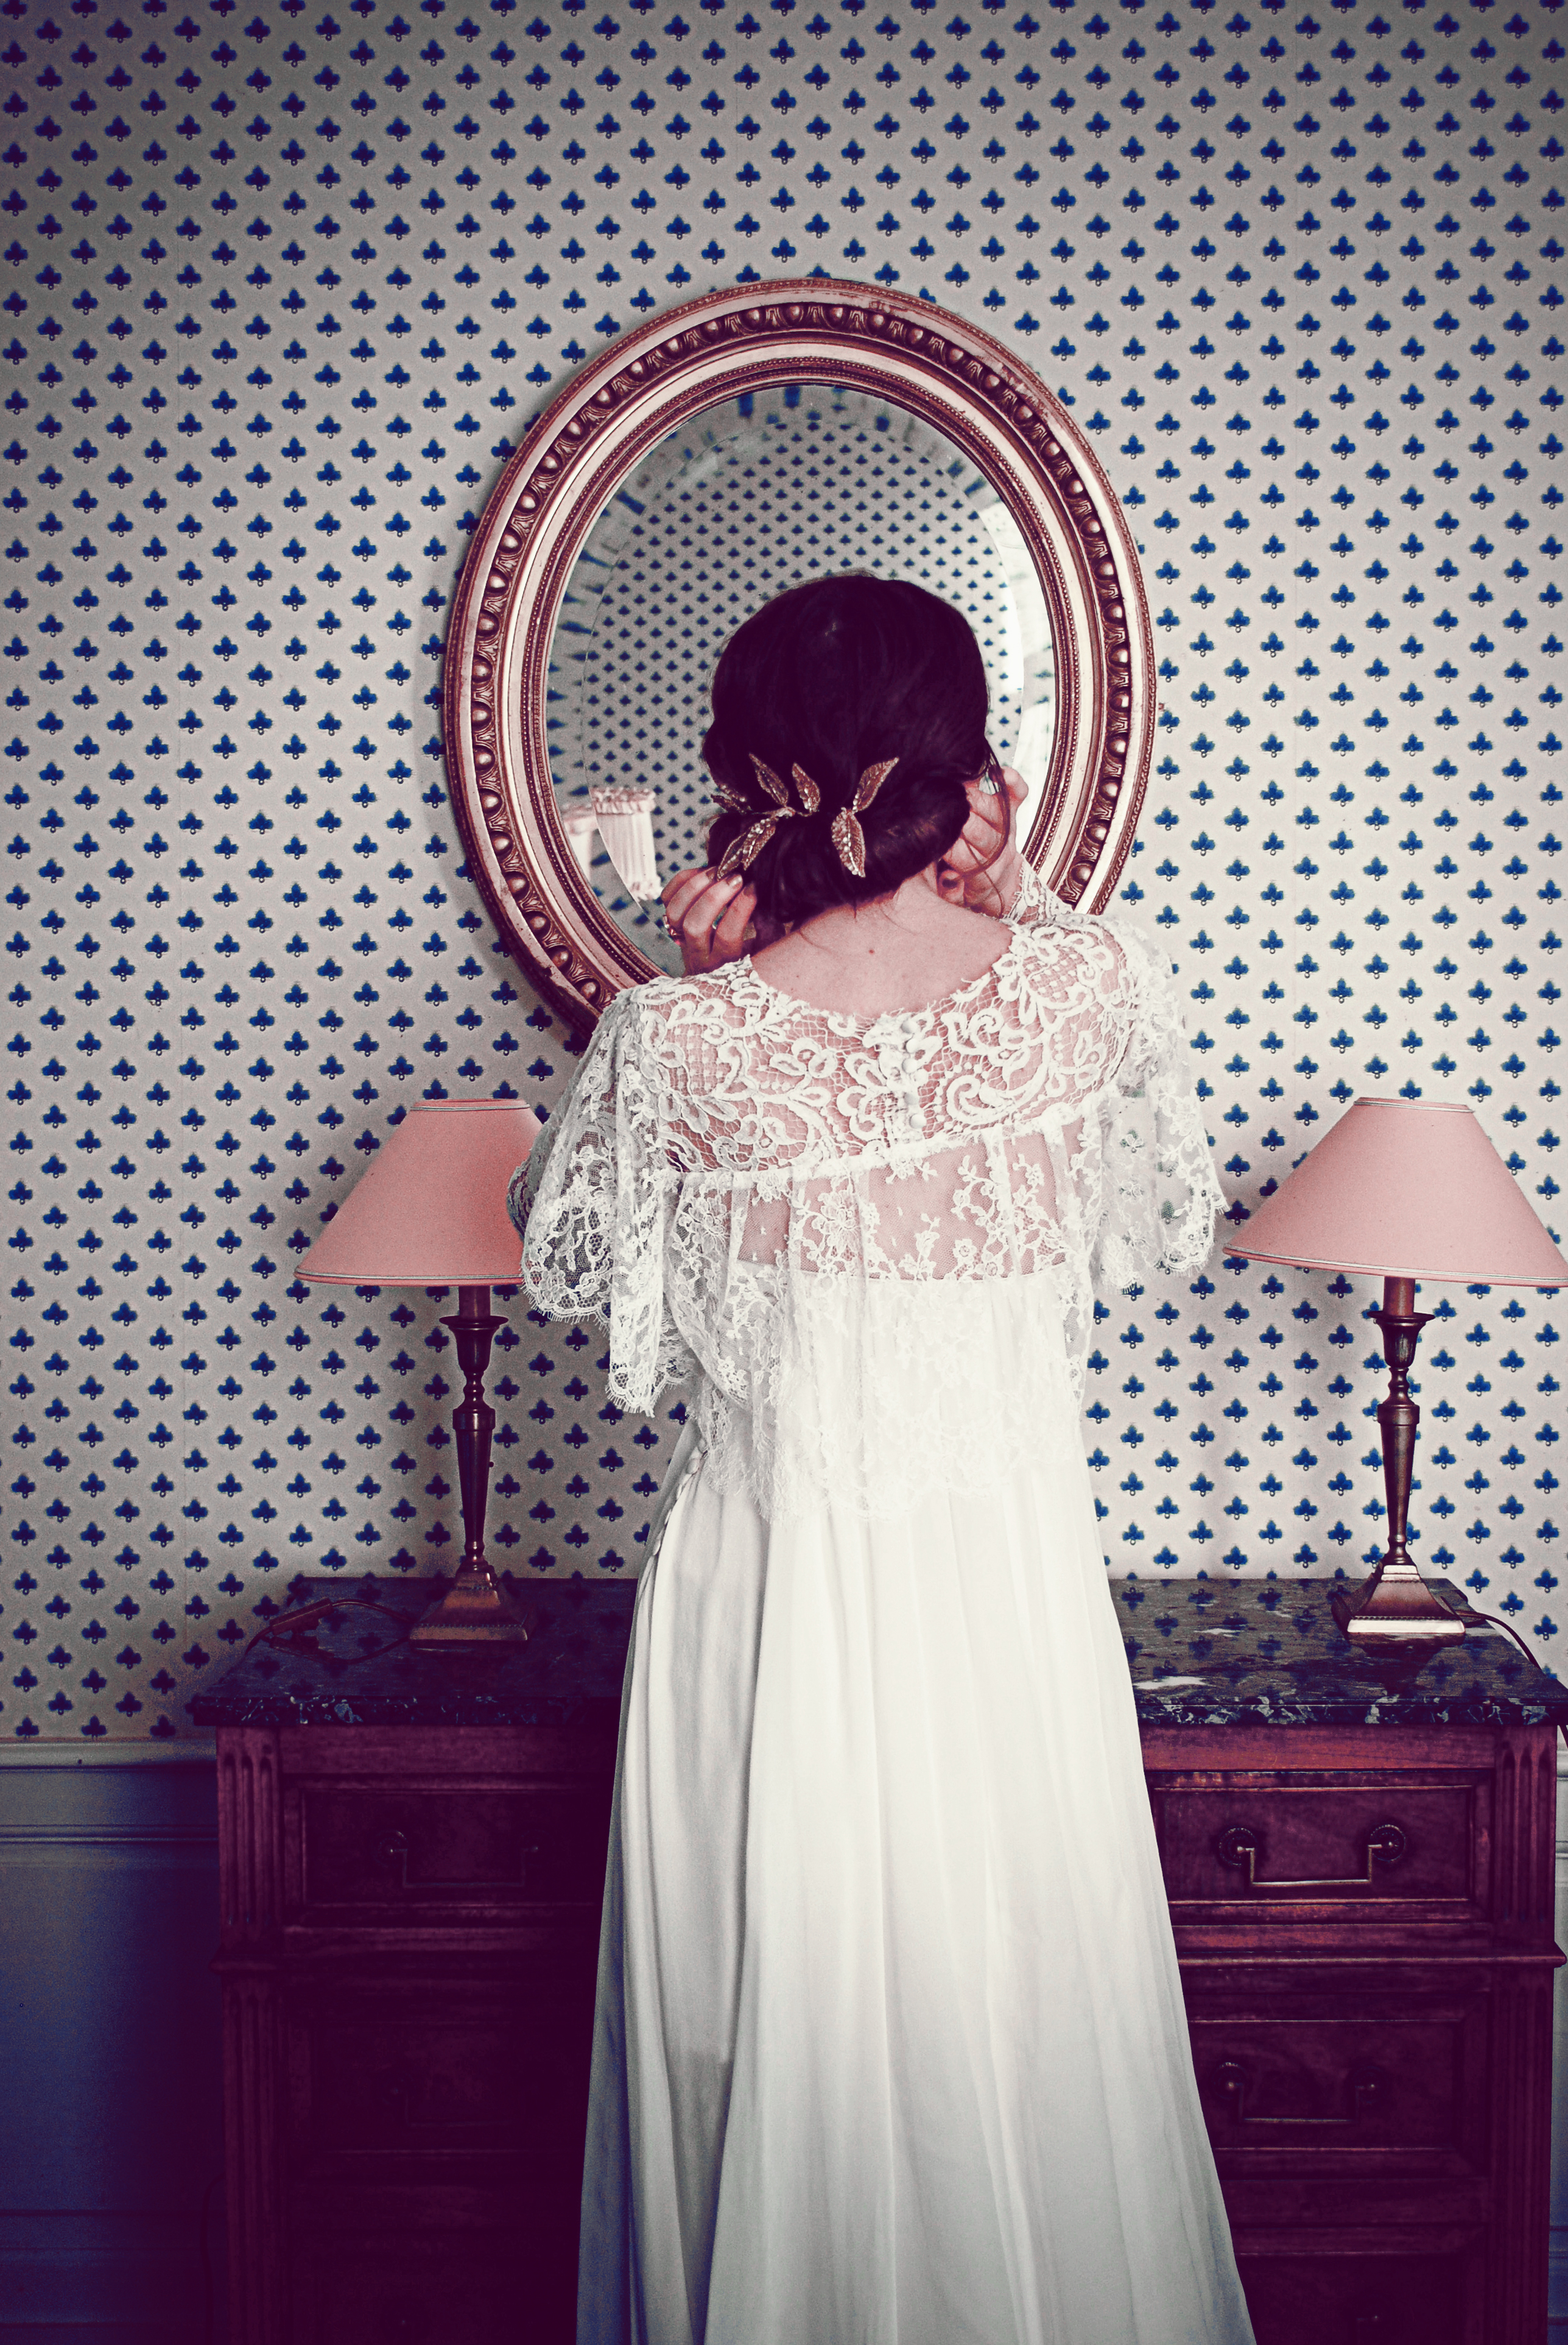 Constance Fournier – Robes de mariee – Nouvelle collection 2013 – La mariee aux pieds nus